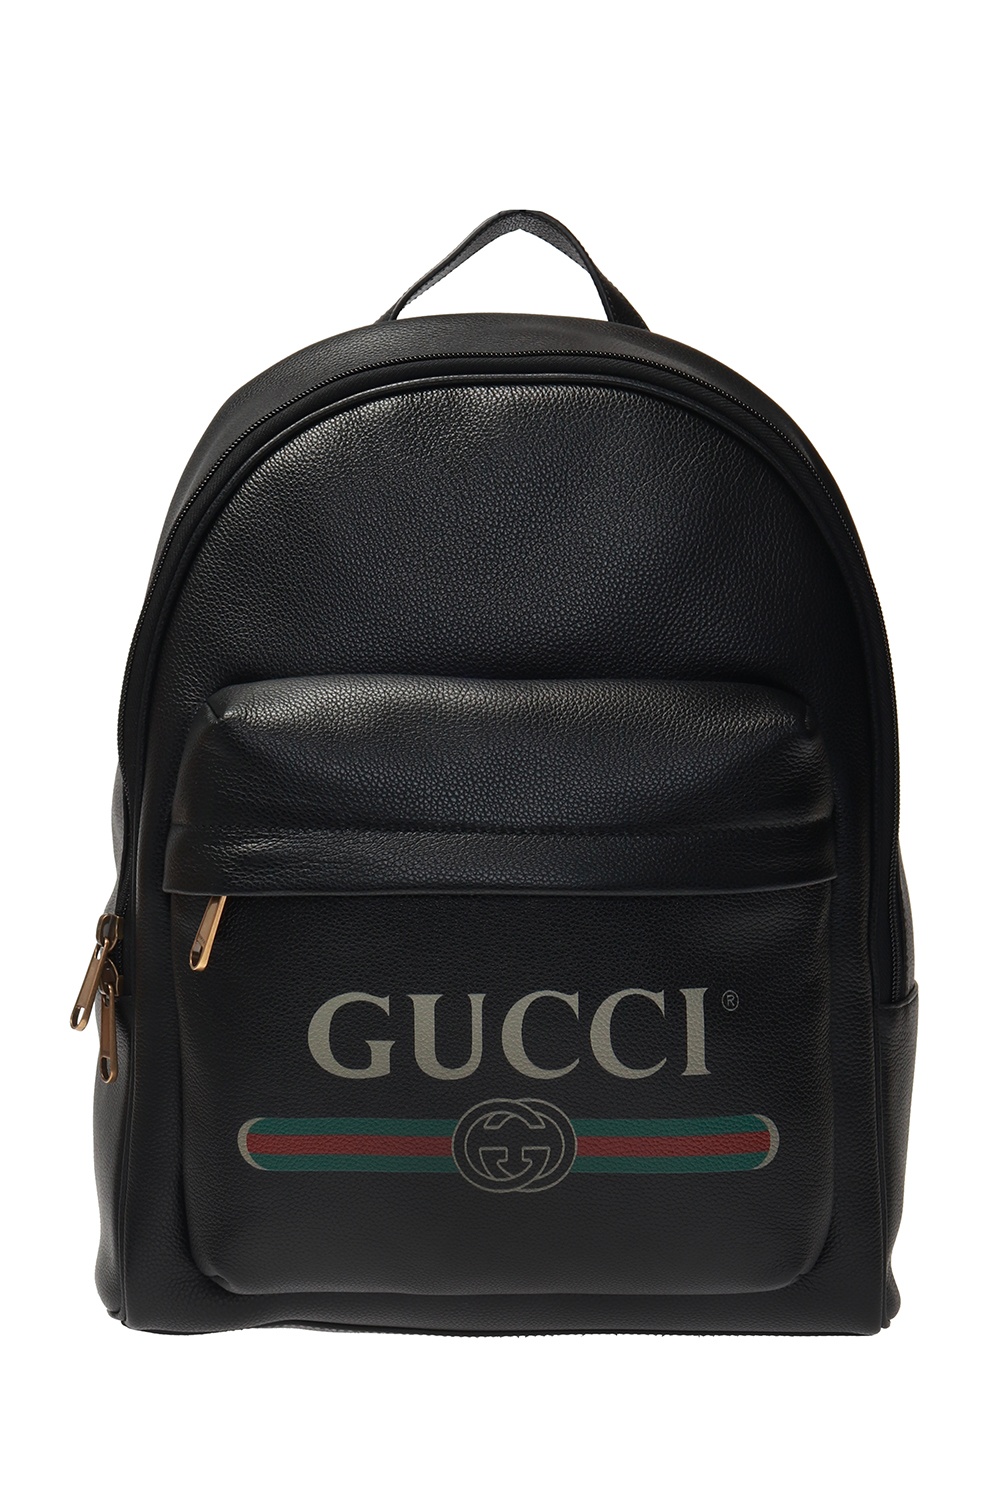 back bag gucci